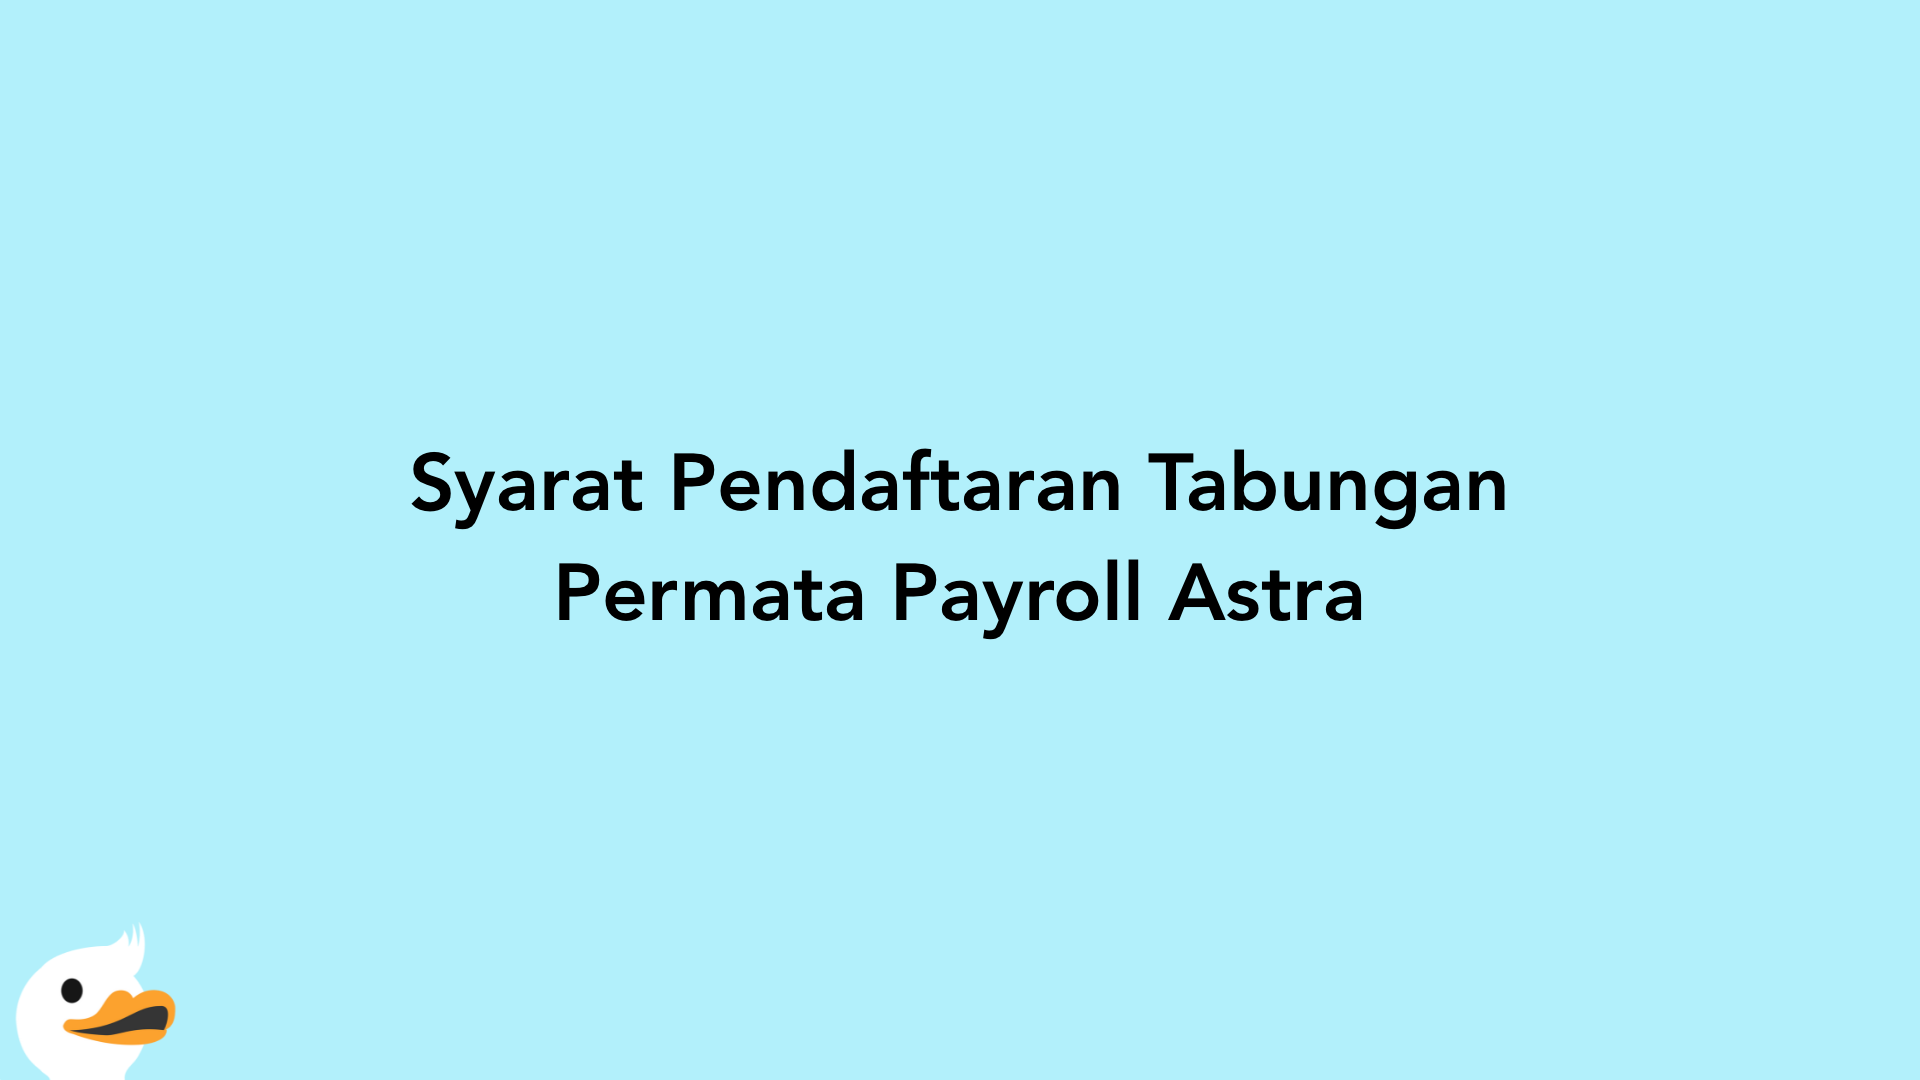 Syarat Pendaftaran Tabungan Permata Payroll Astra